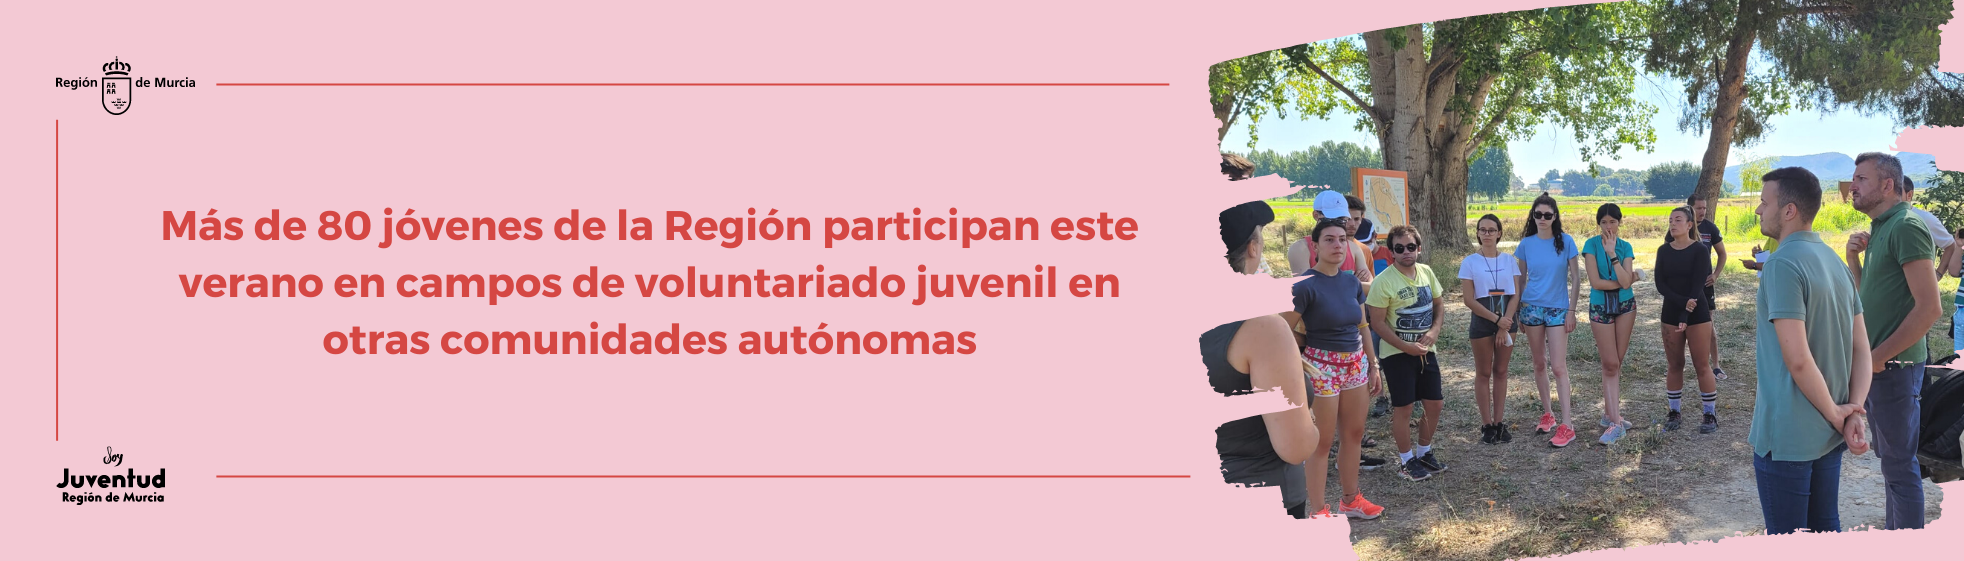 Más de 80 jóvenes de la Región participan este verano en campos de voluntariado juvenil en otras comunidades autónomas